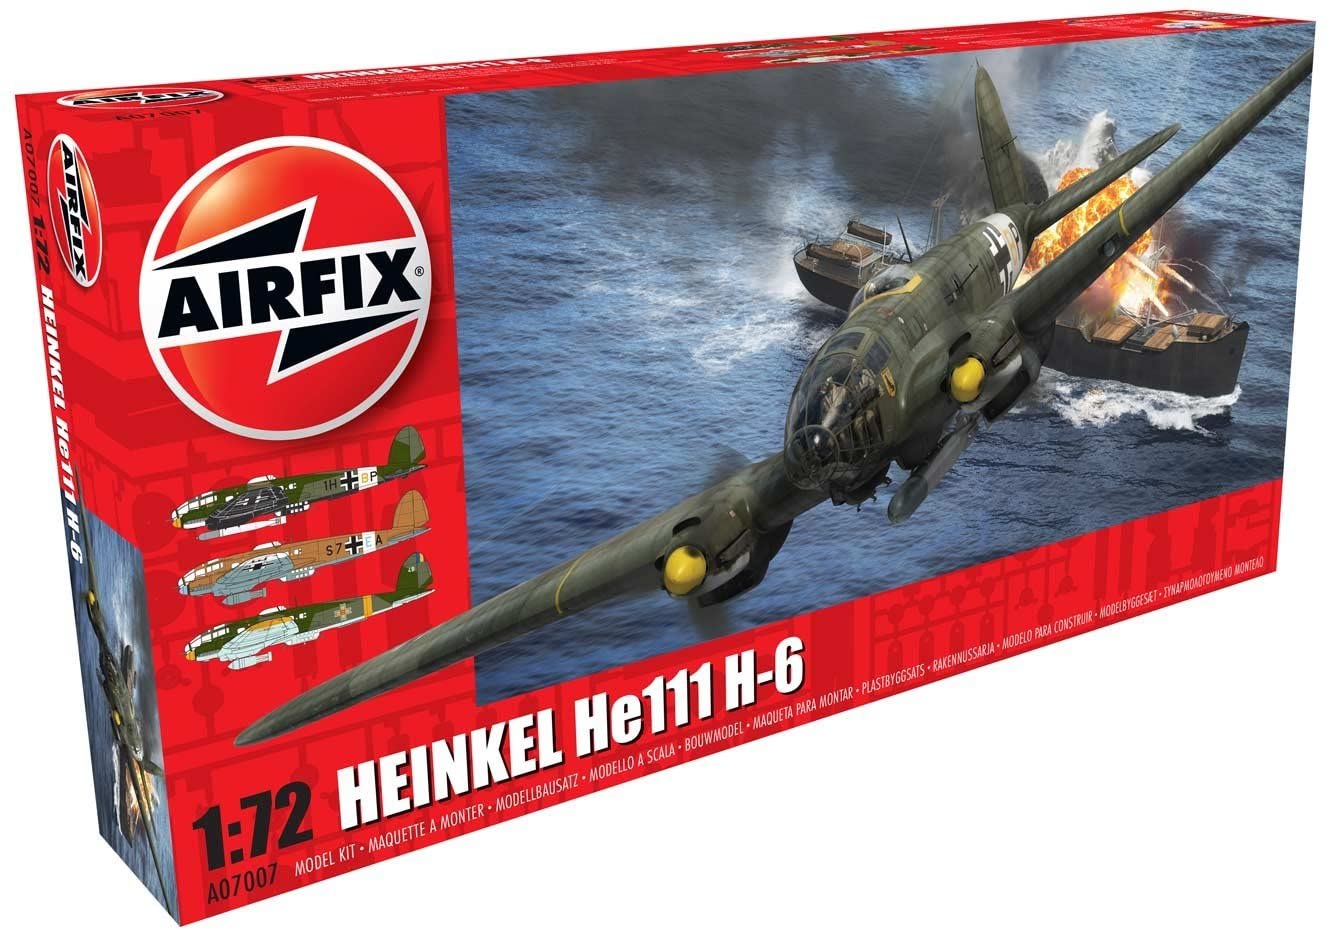 エアフィックス 1/72 ハインケル He111 H6 プラモデル X7007